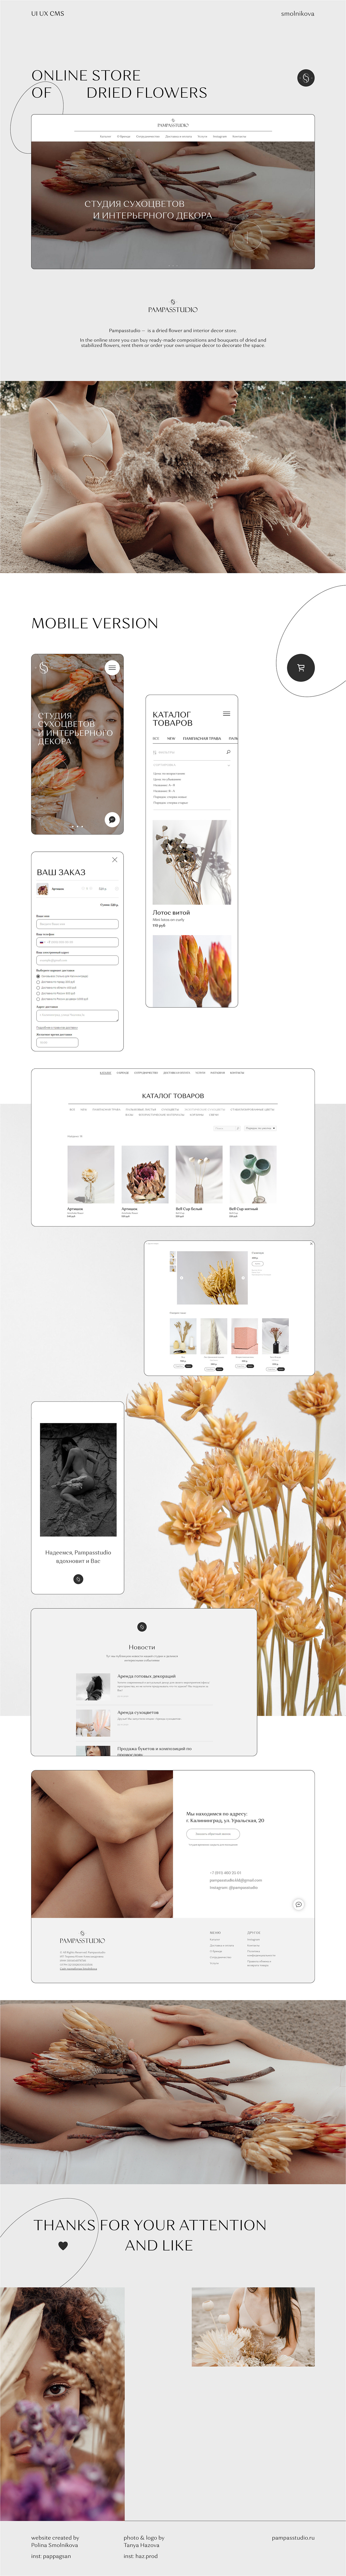 design Dried Flowers Ecommerce Figma mobile design online store UI ux Webdesign webdesigner